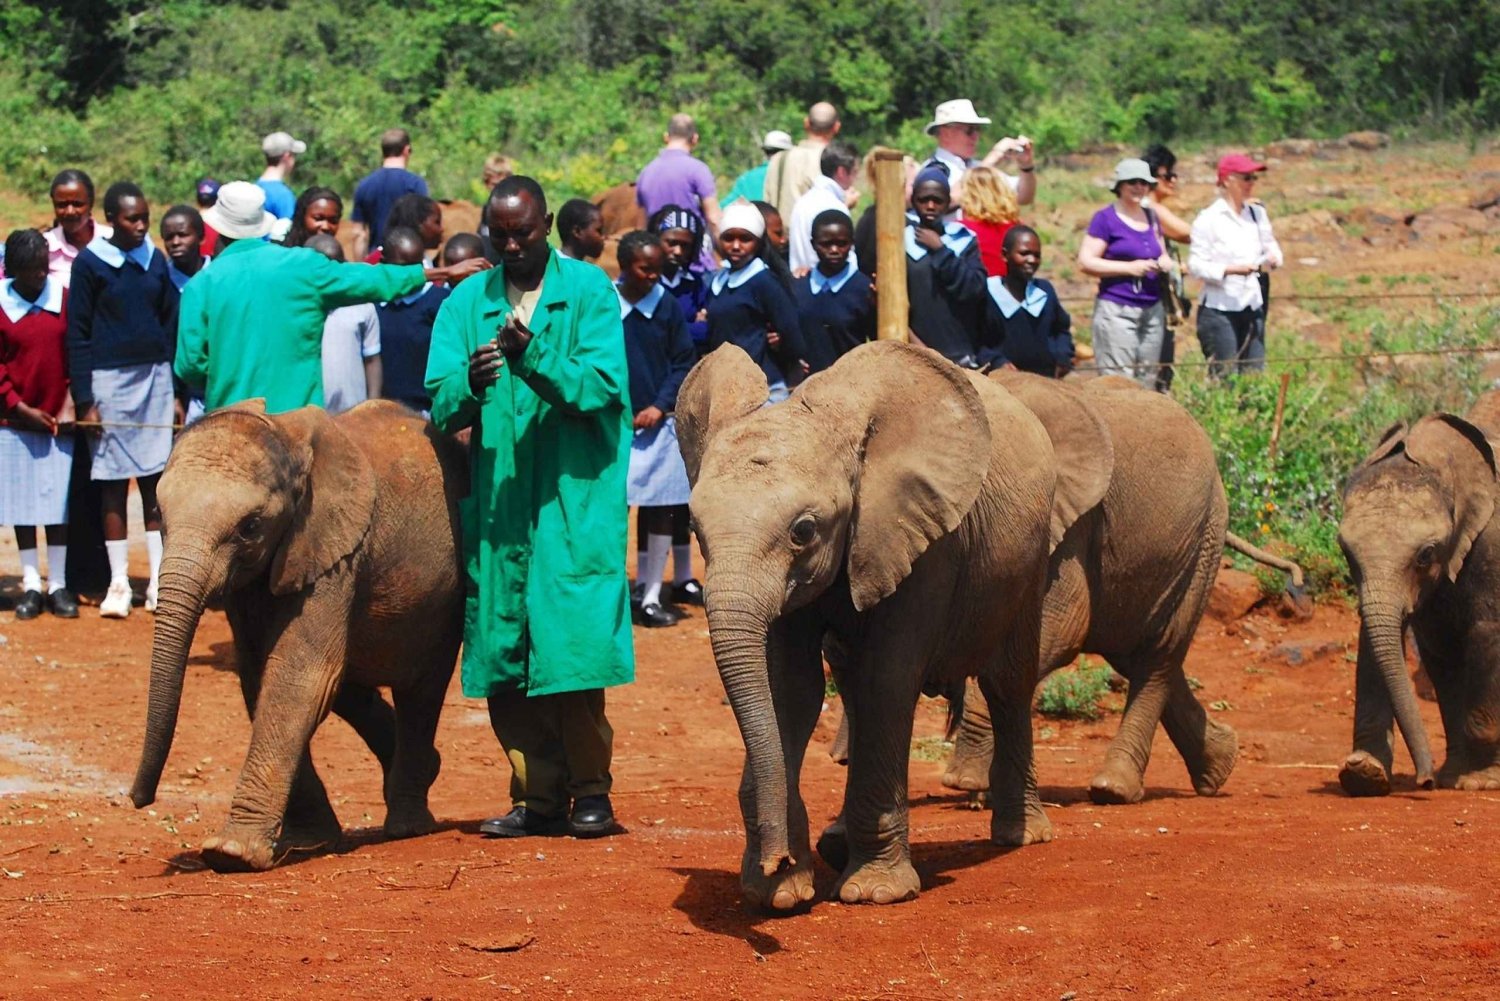 Excursion d'une journée à Nairobi : Centre des girafes, éléphants et perles Kazuri